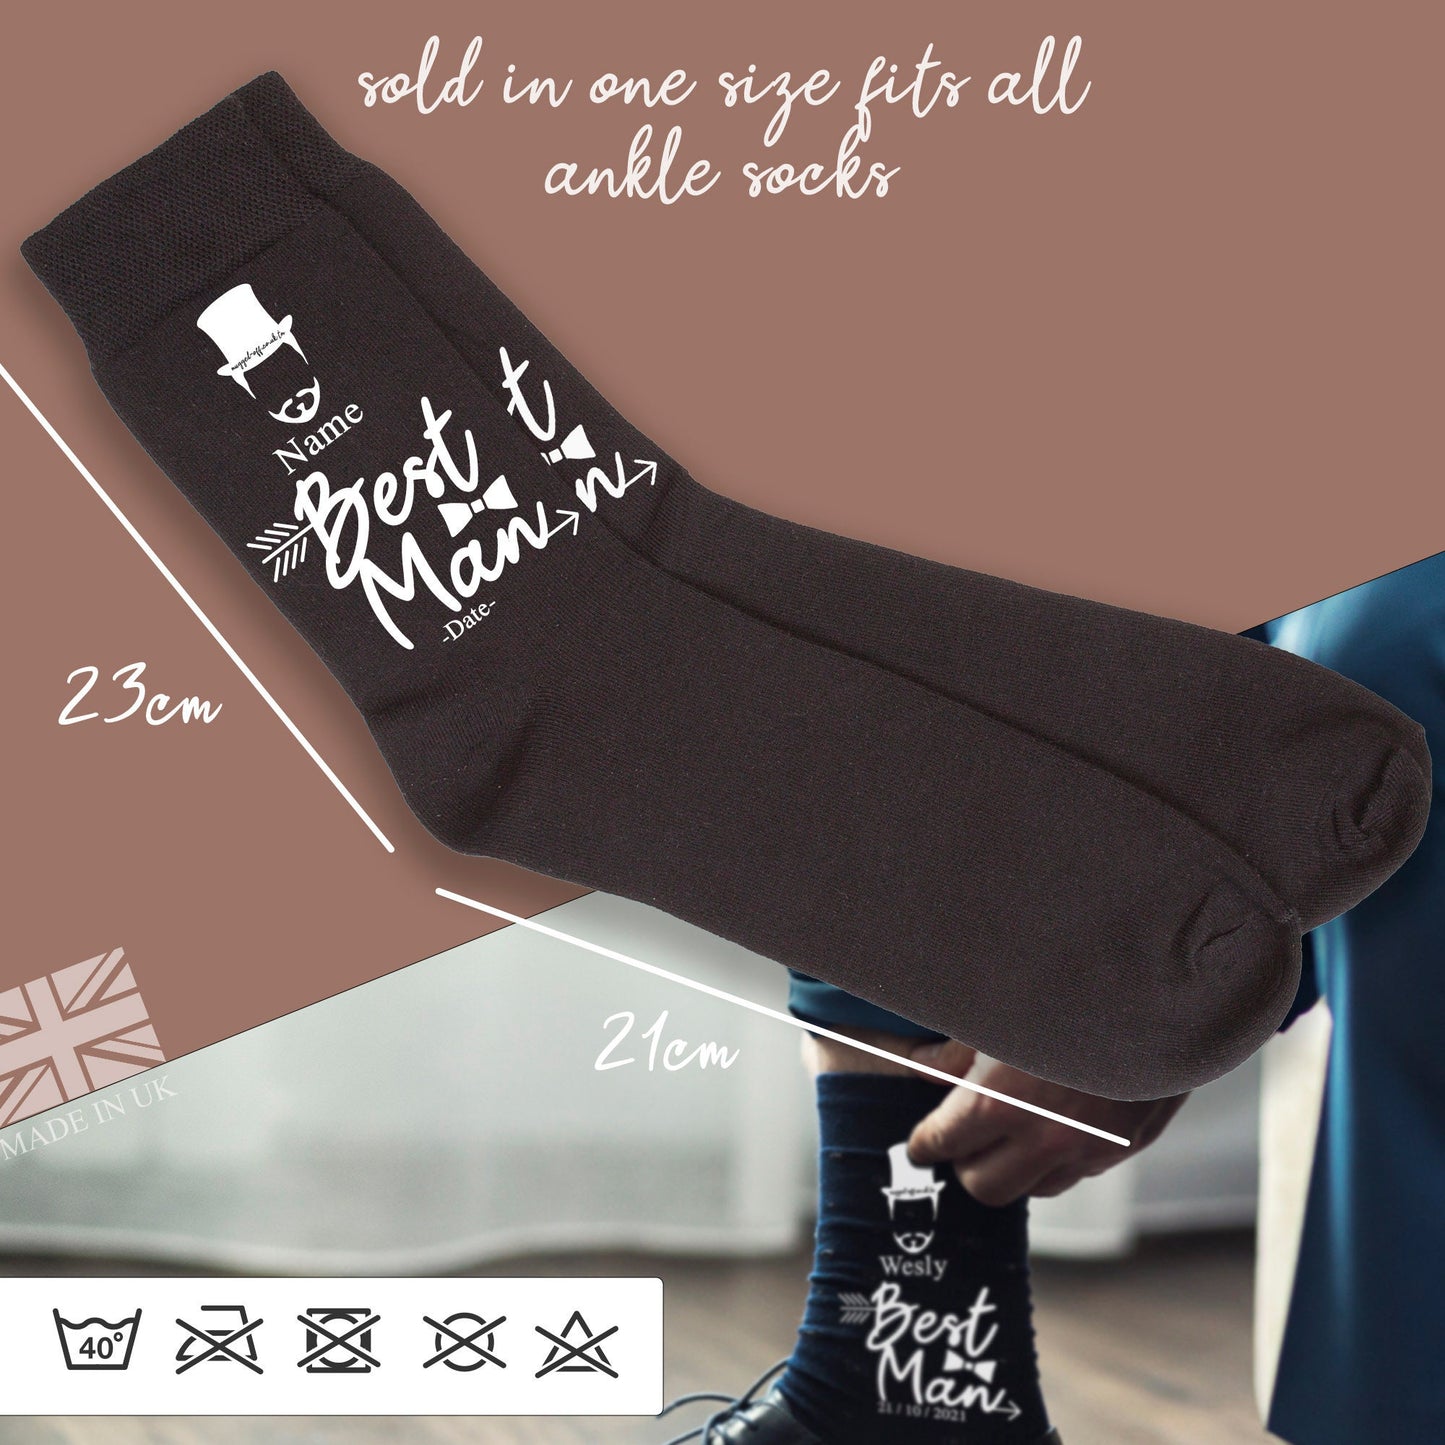 Personalised wedding socks, Groom, Best Man, Groomsman Gift set wedding socks